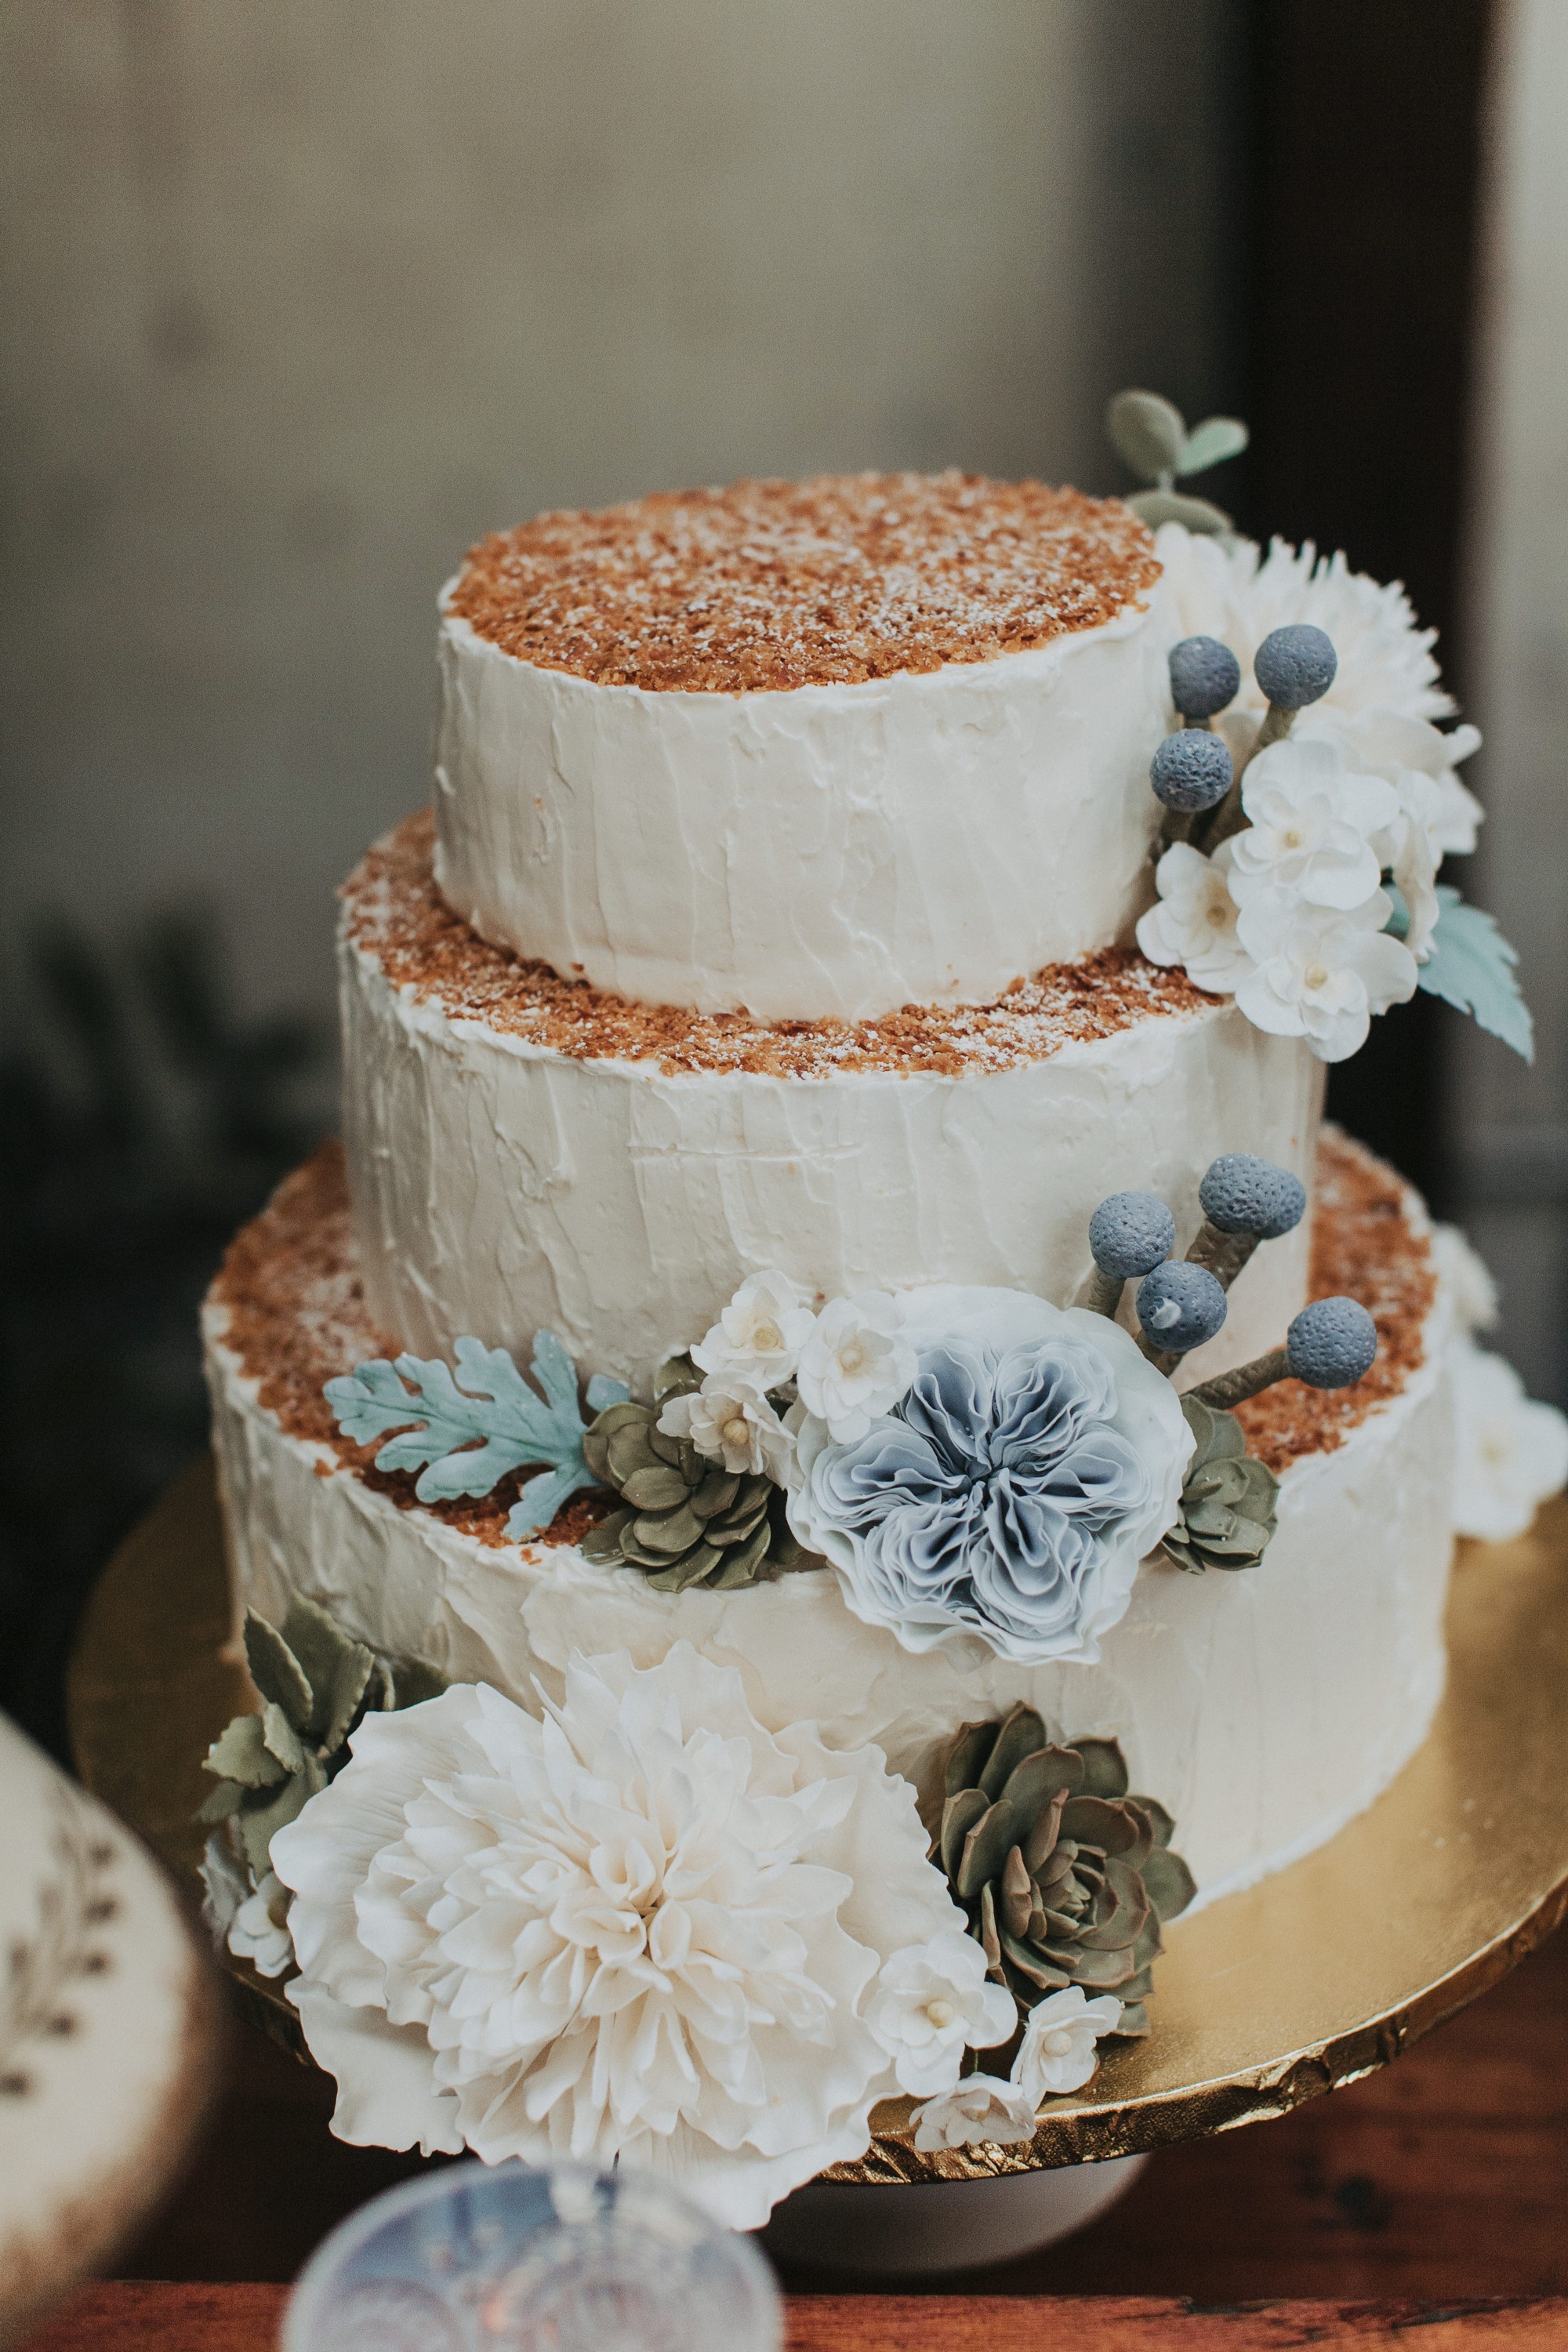 Leslie & Darren – Wedding Cake